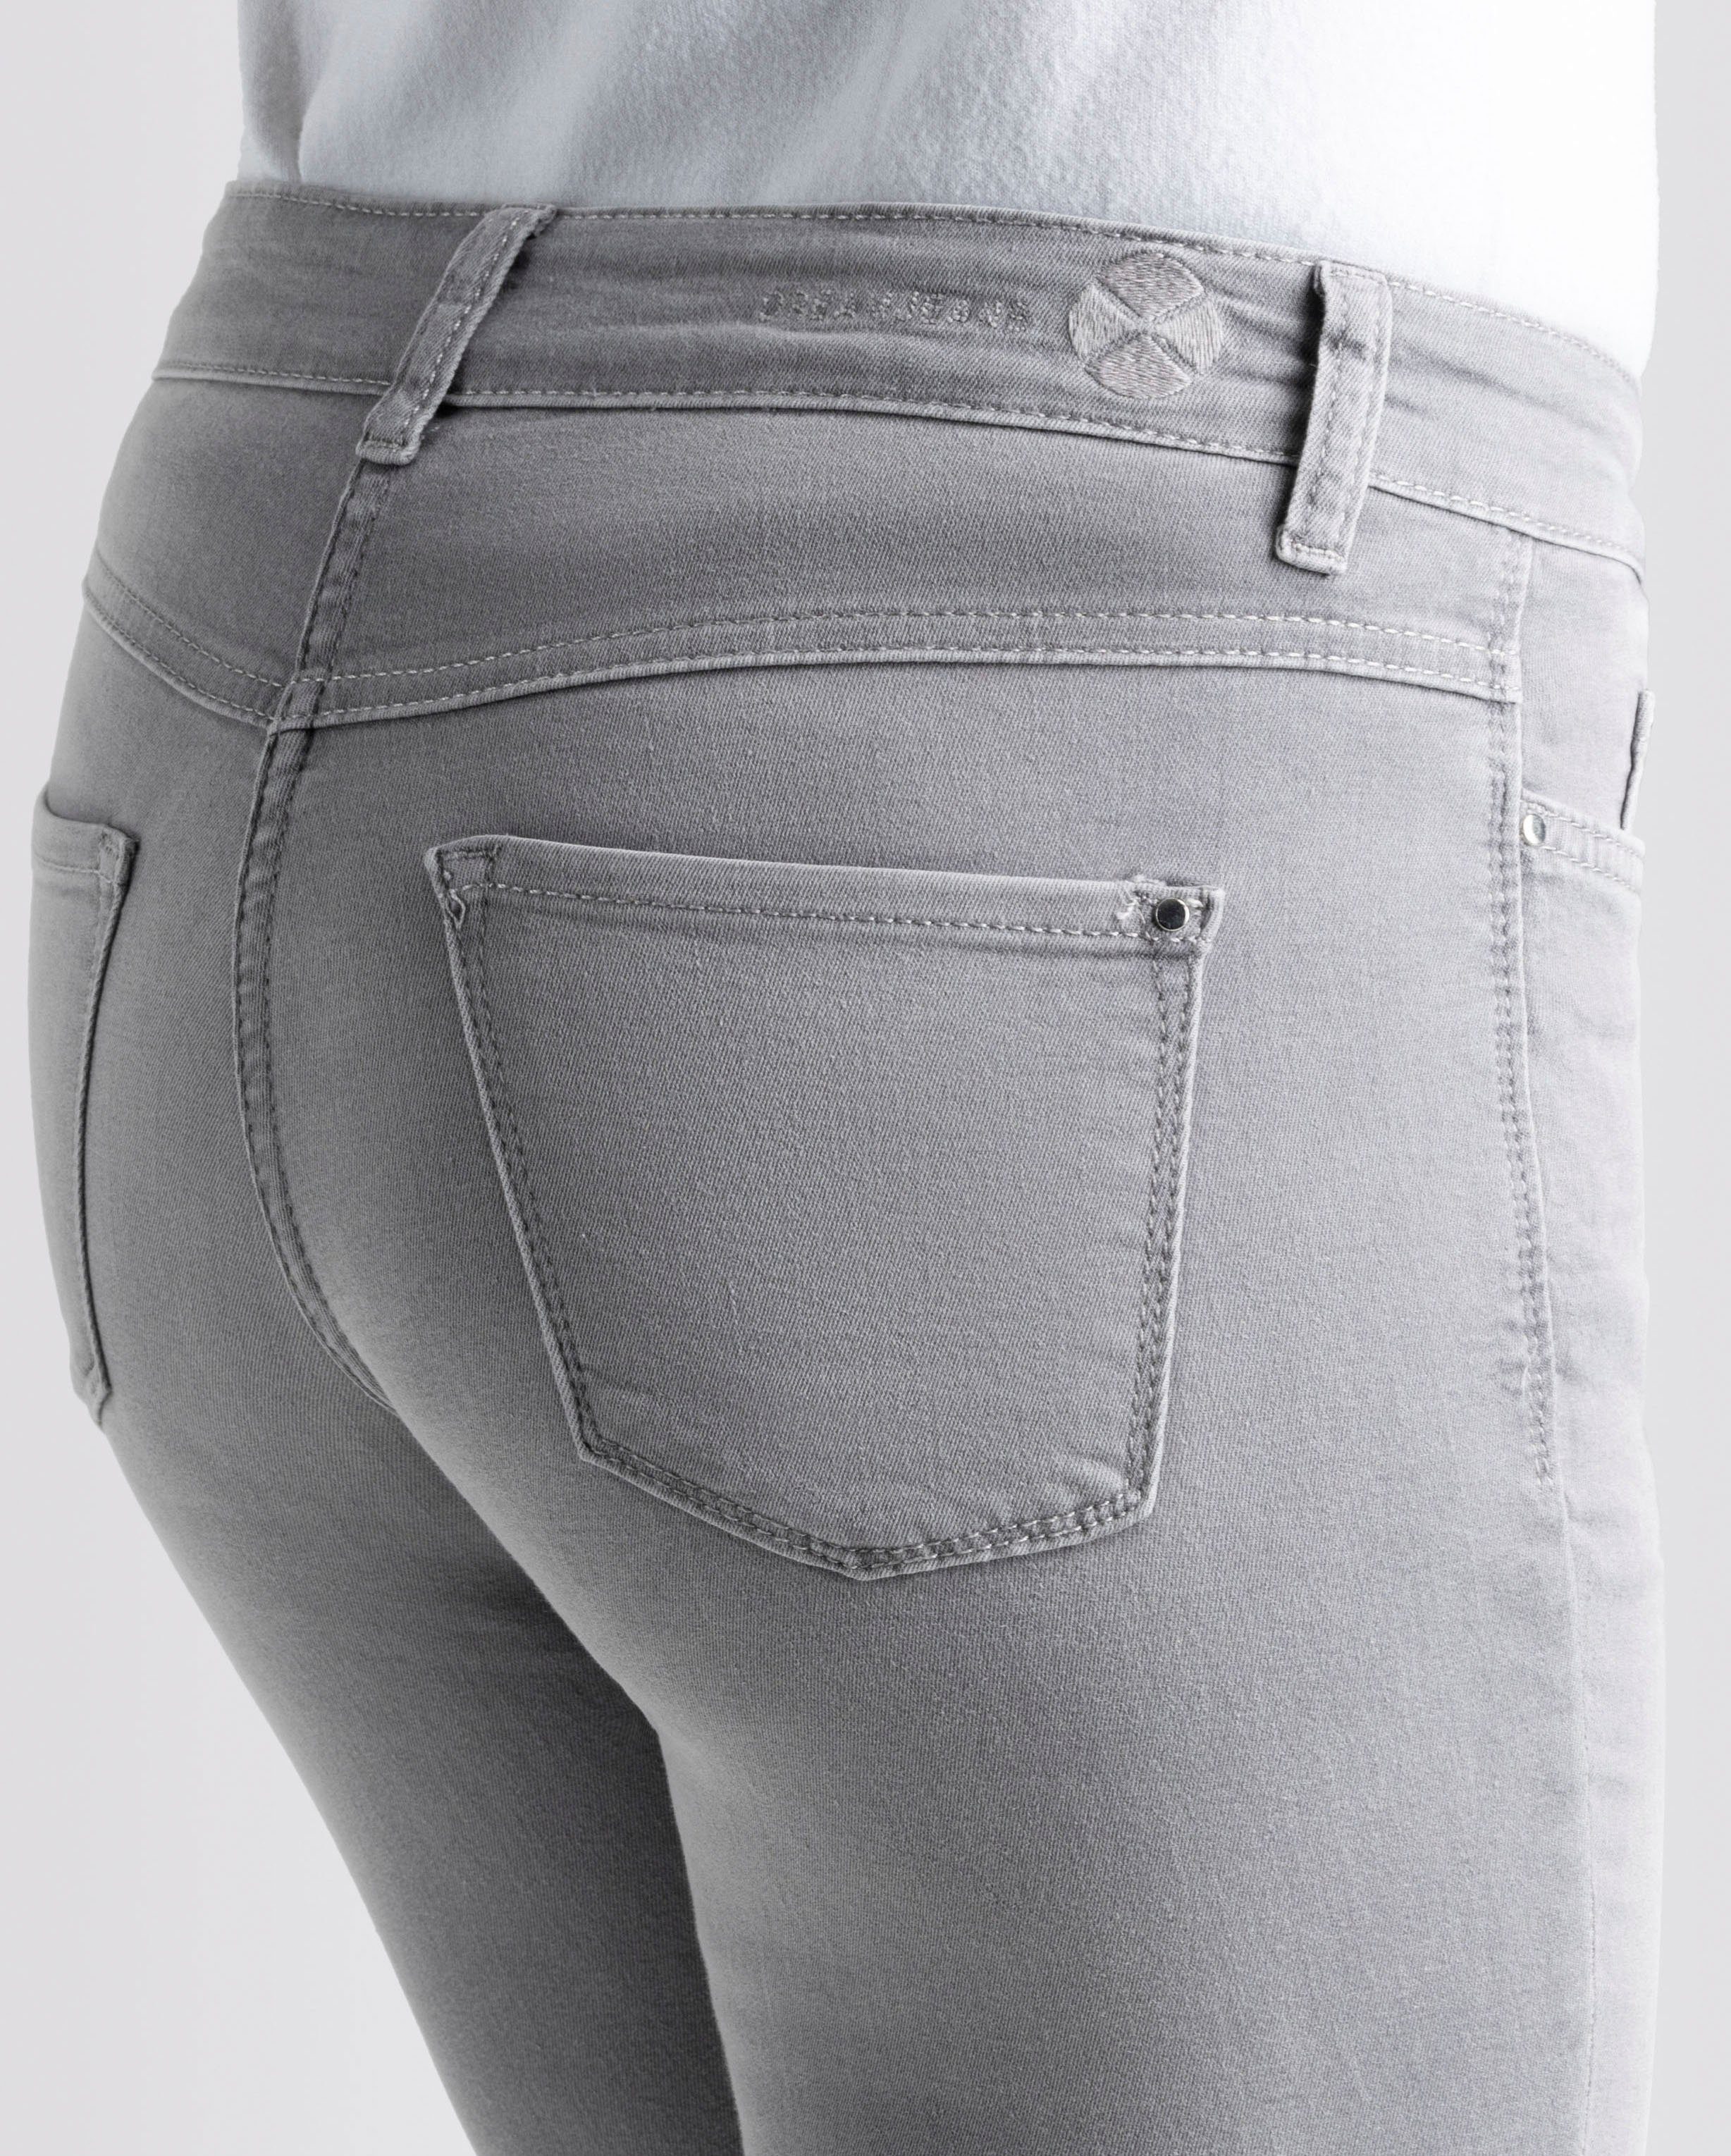 den für sorgt perfekten Skinny Dream Sitz Qualität Hochelastische MAC light Skinny-fit-Jeans wash grey